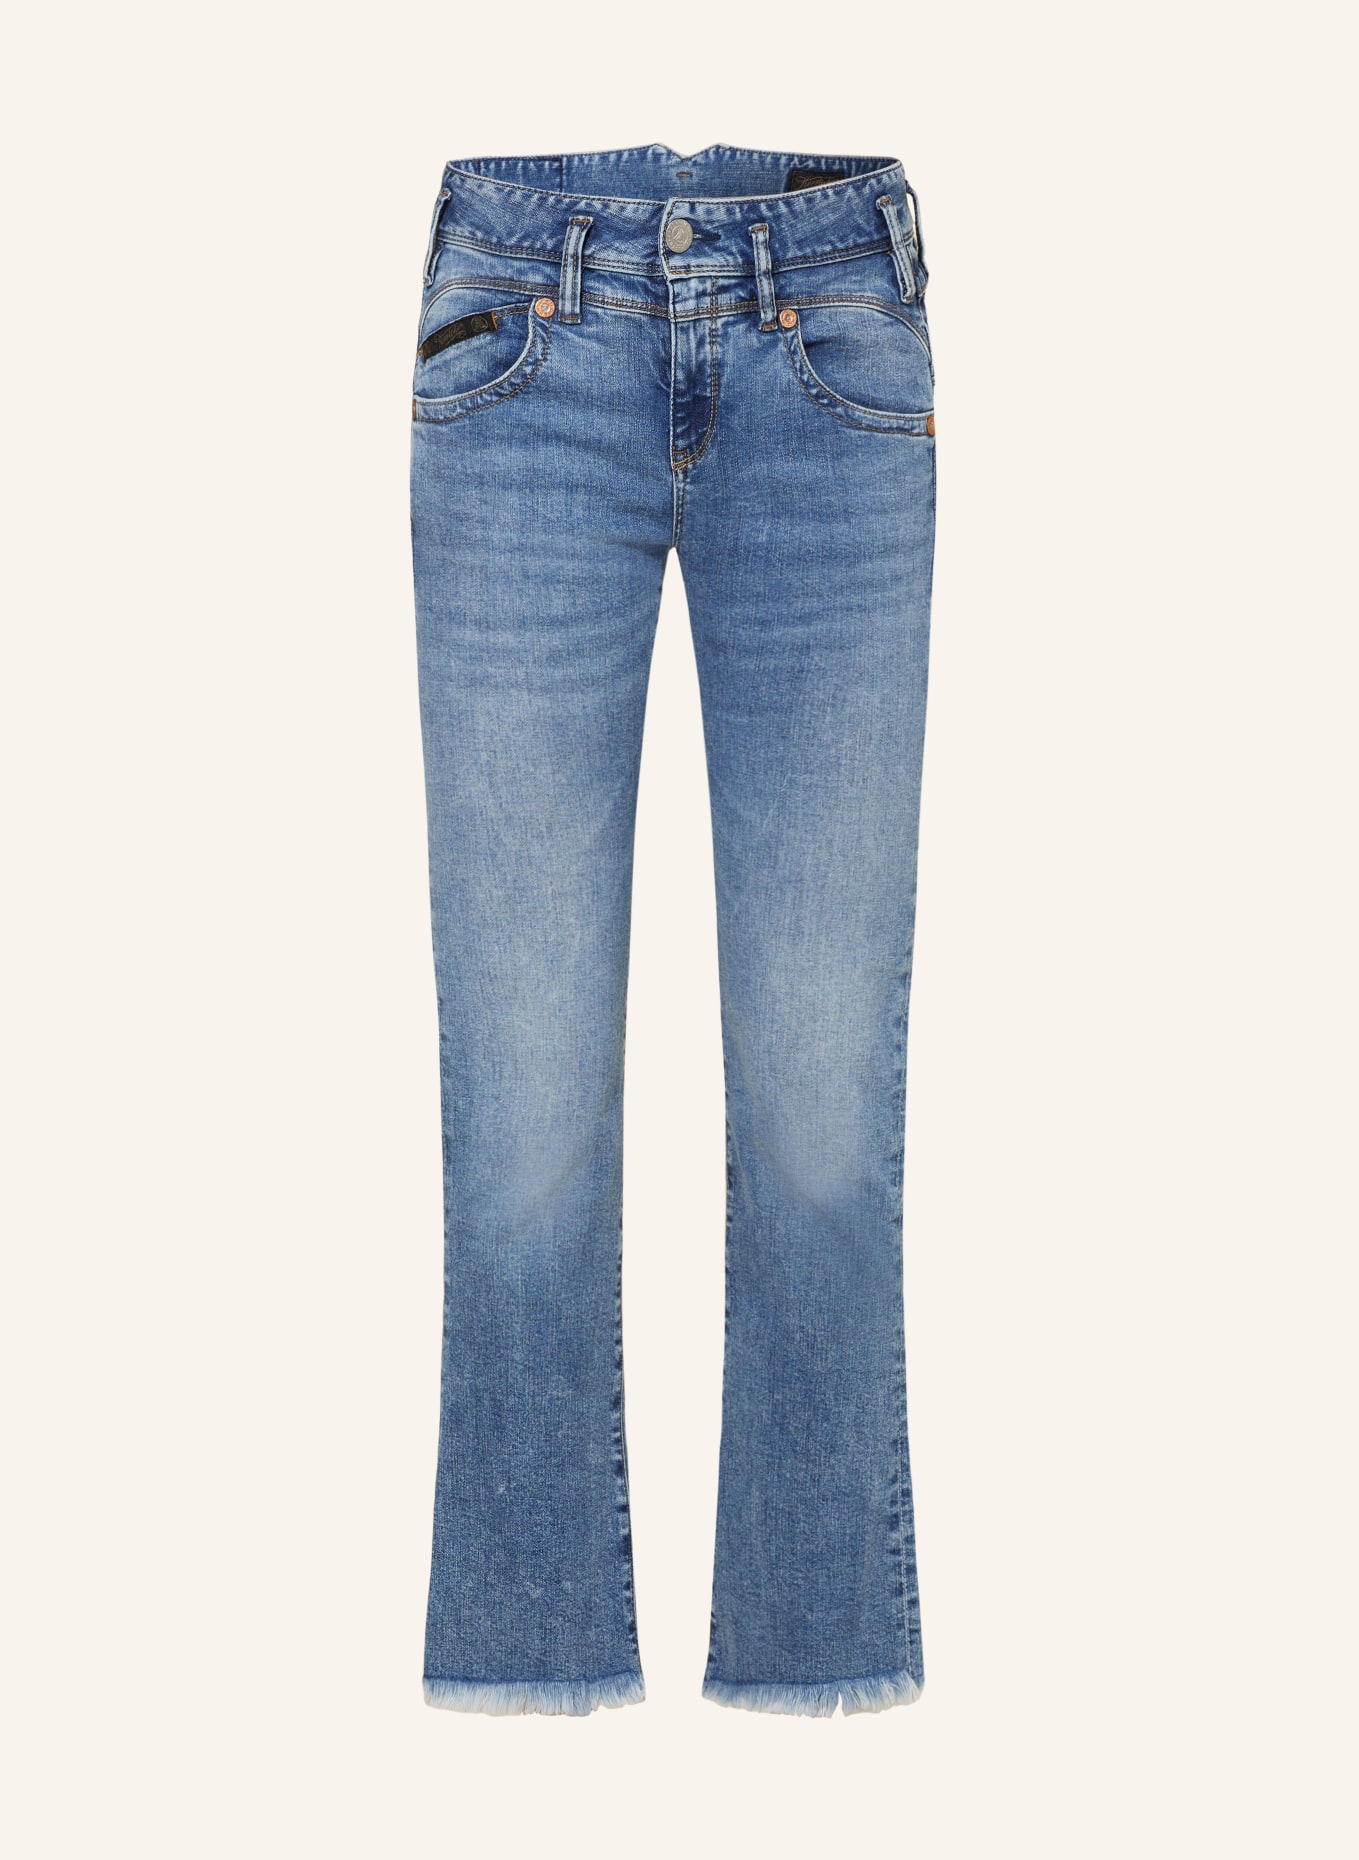 Herrlicher Bootcut Jeans PEARL, Farbe: 076 blend (Bild 1)